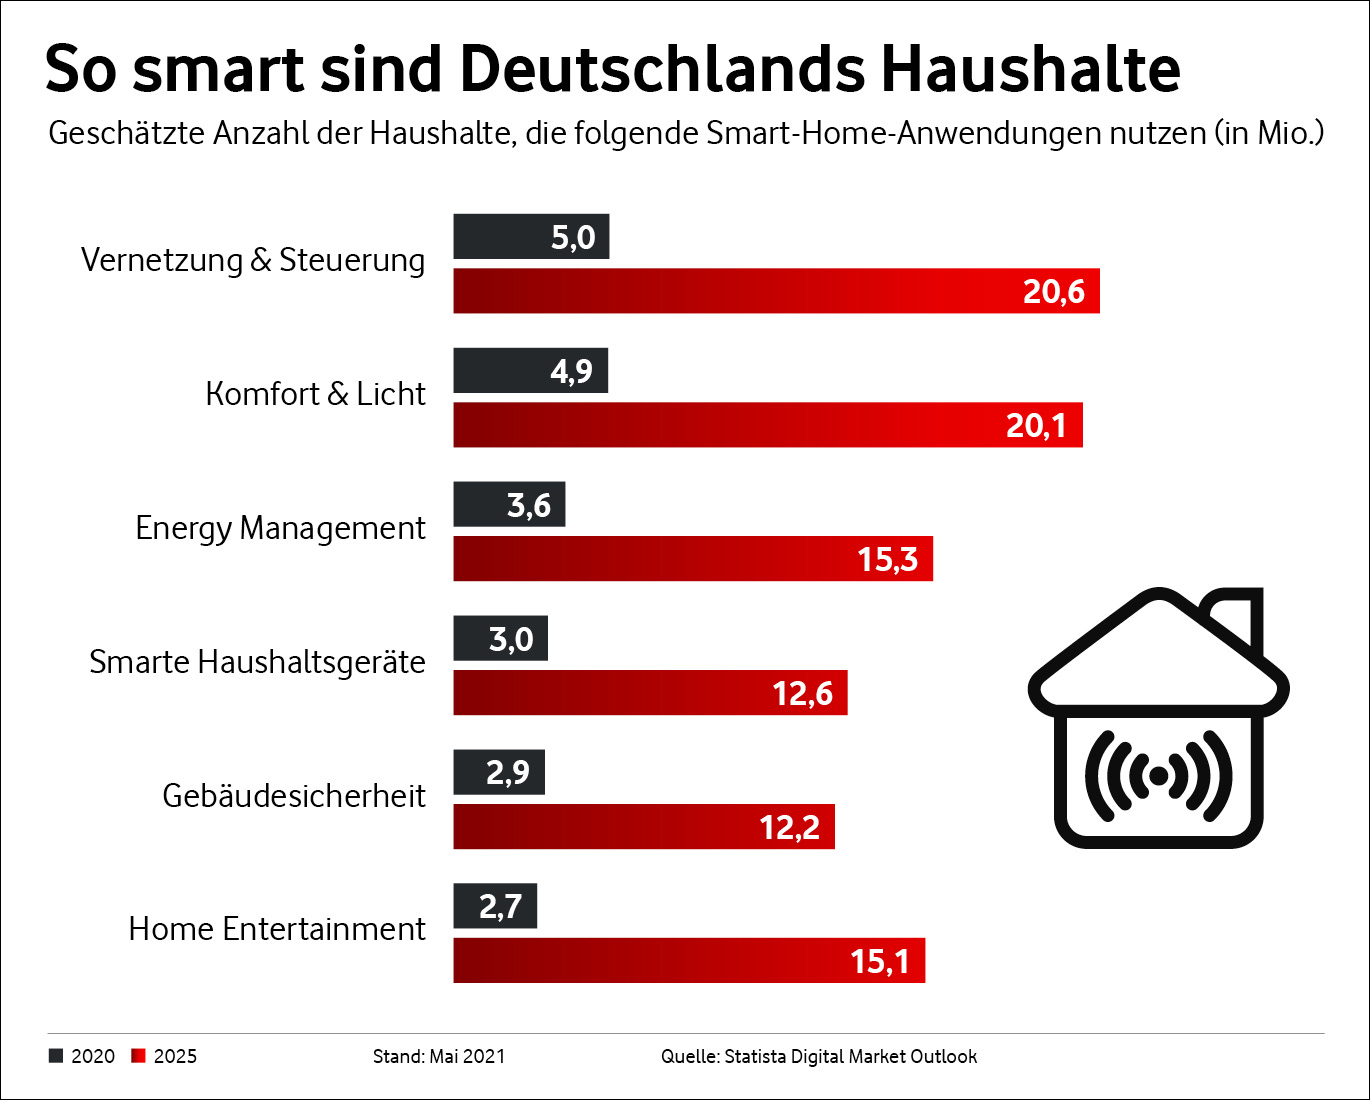 So smart sind Deutschlands Haushalte